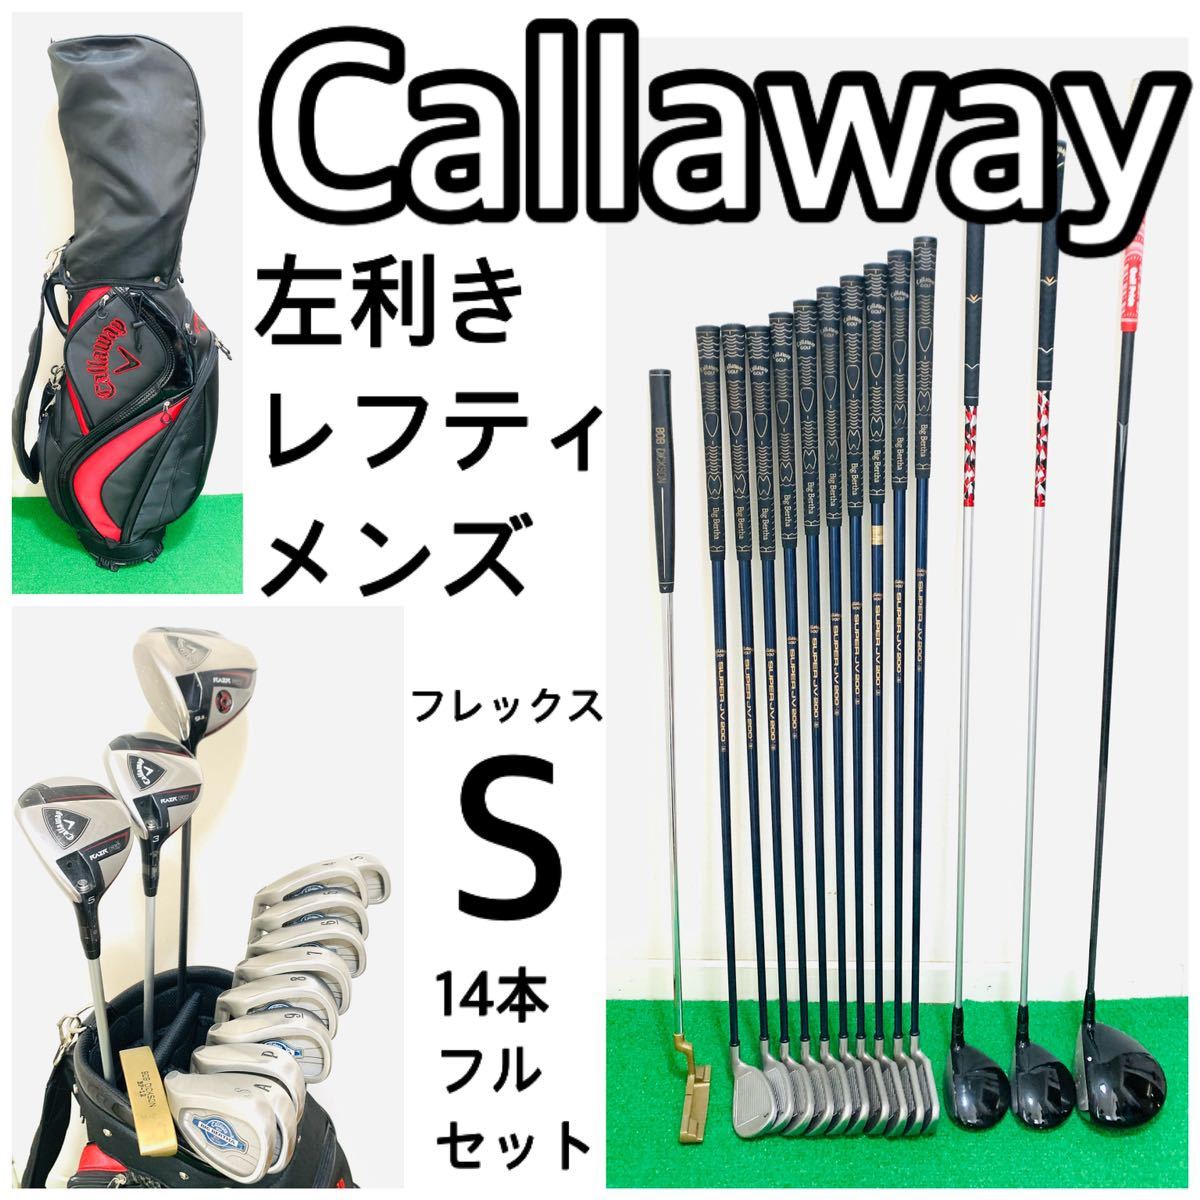 Callaway & FOURTEEN メンズゴルフクラブセット 12本 (S)-